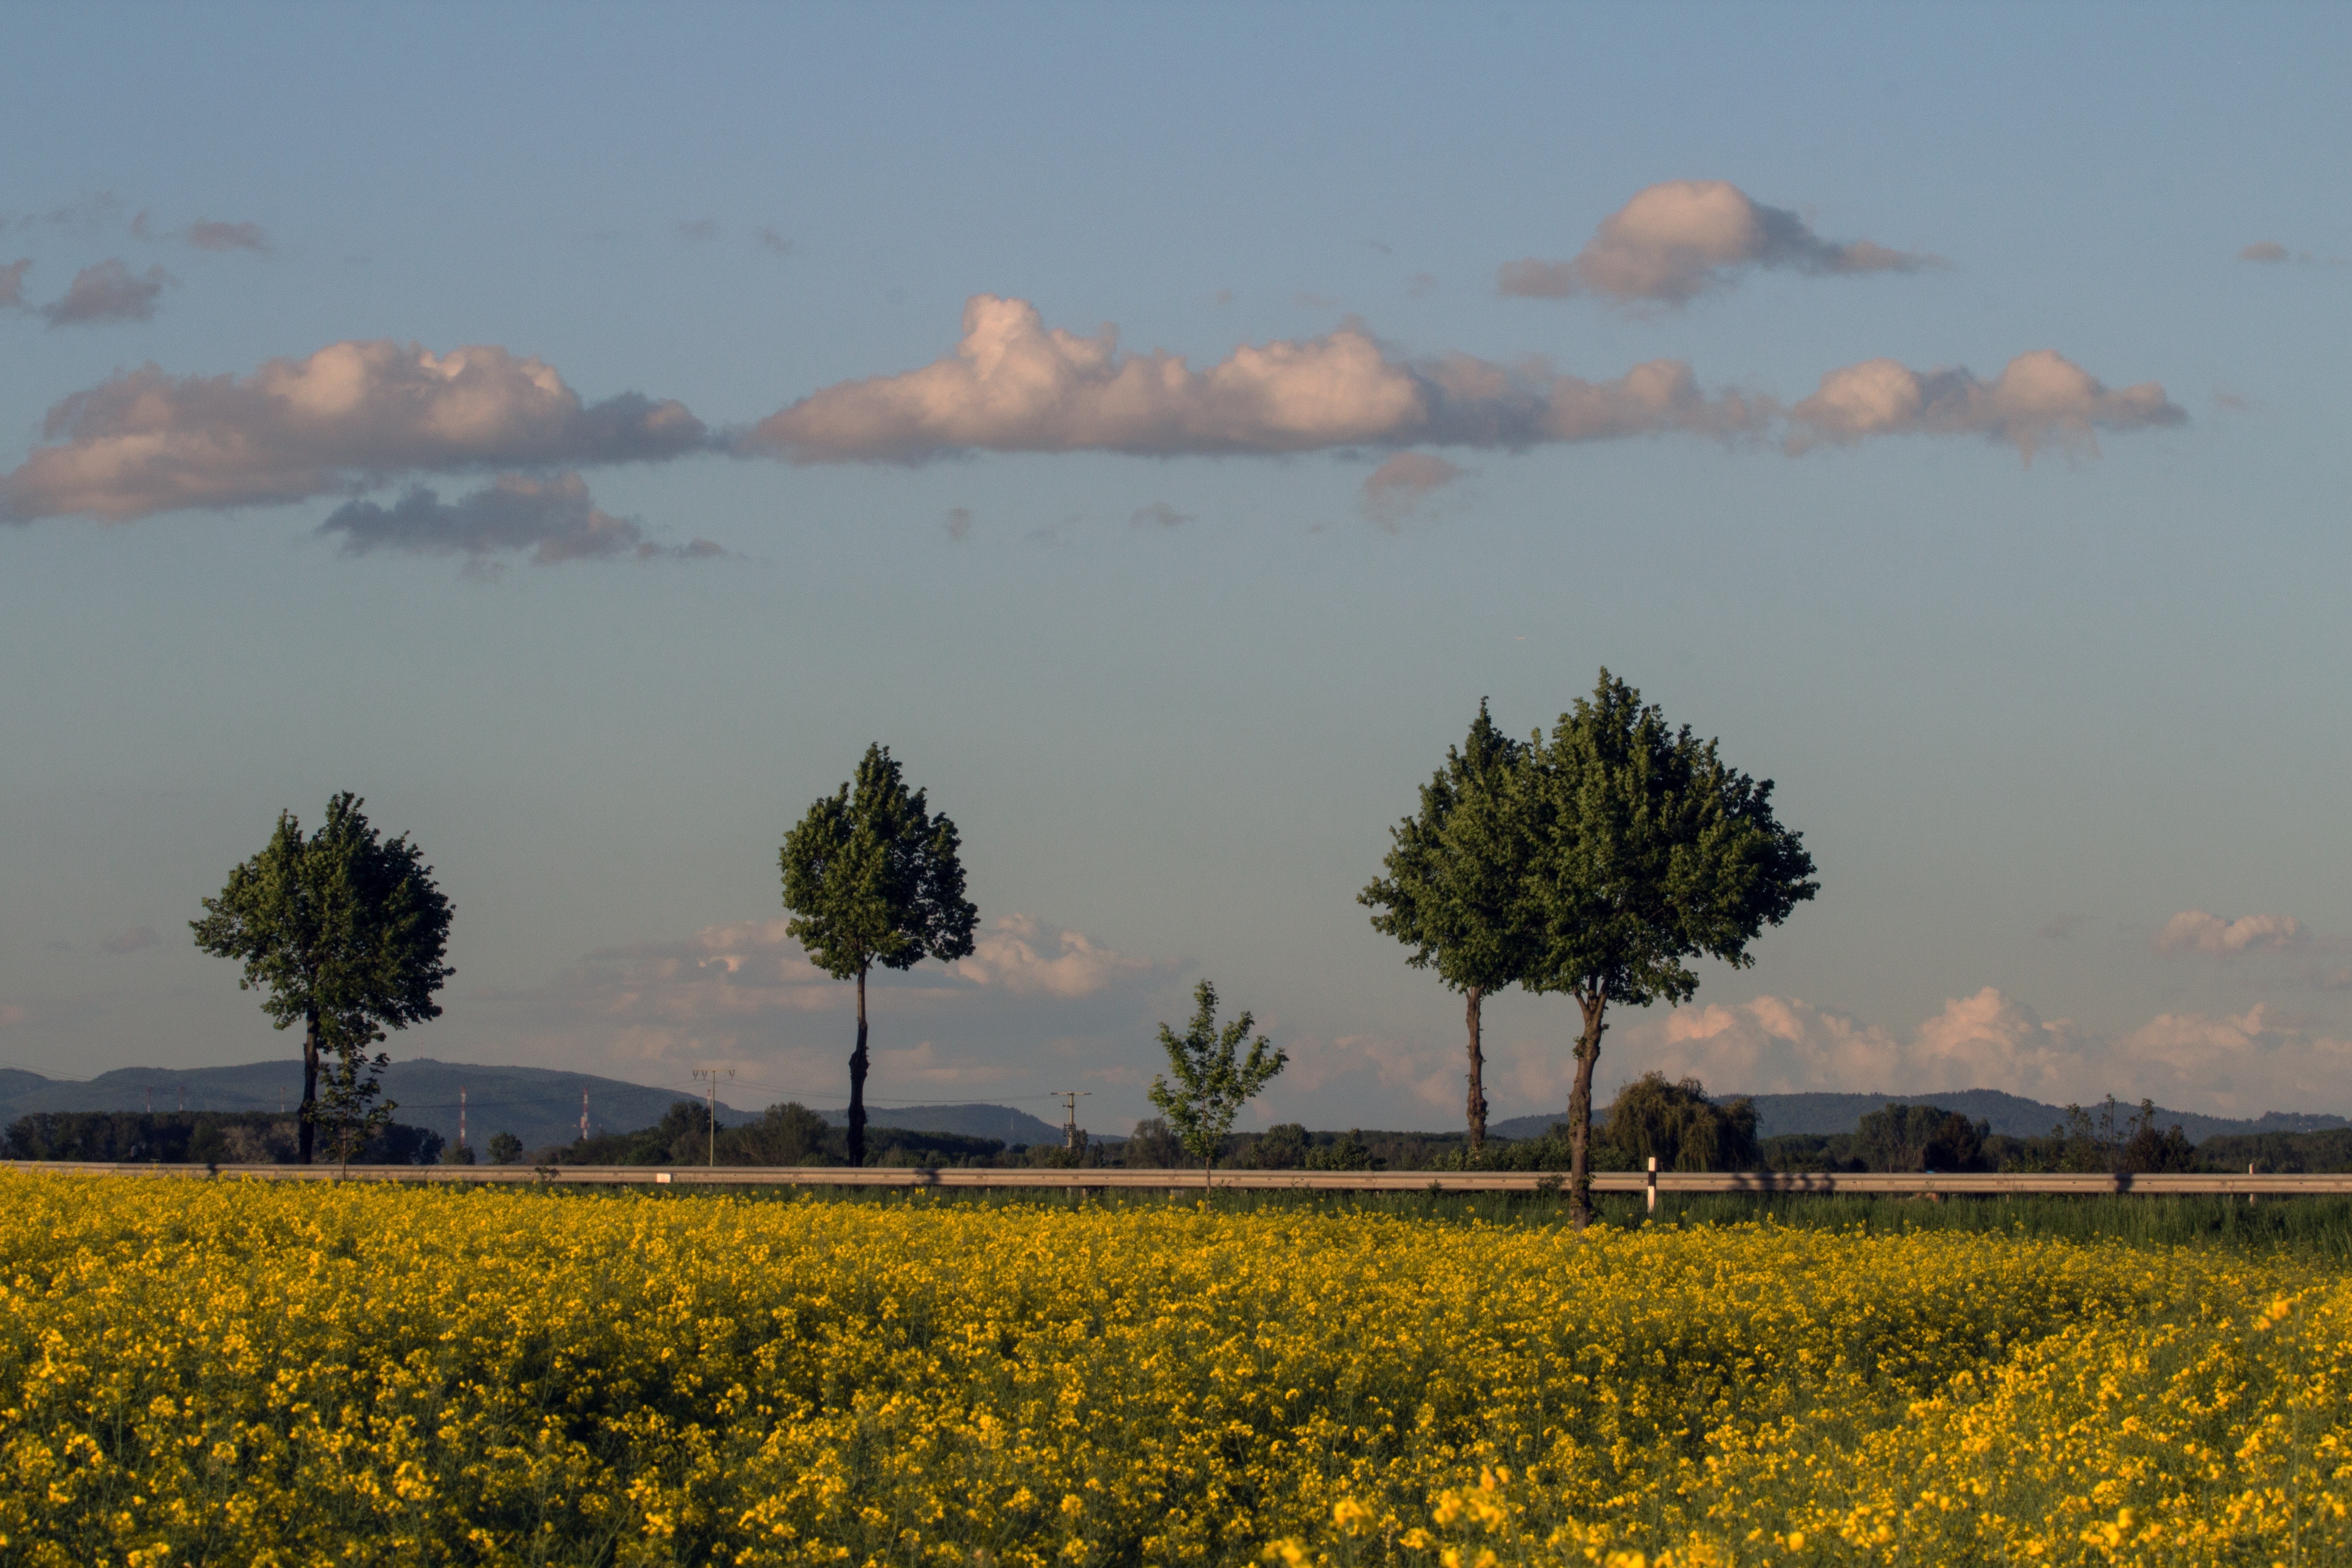 yellow flower fields near road under cloudy blue sky